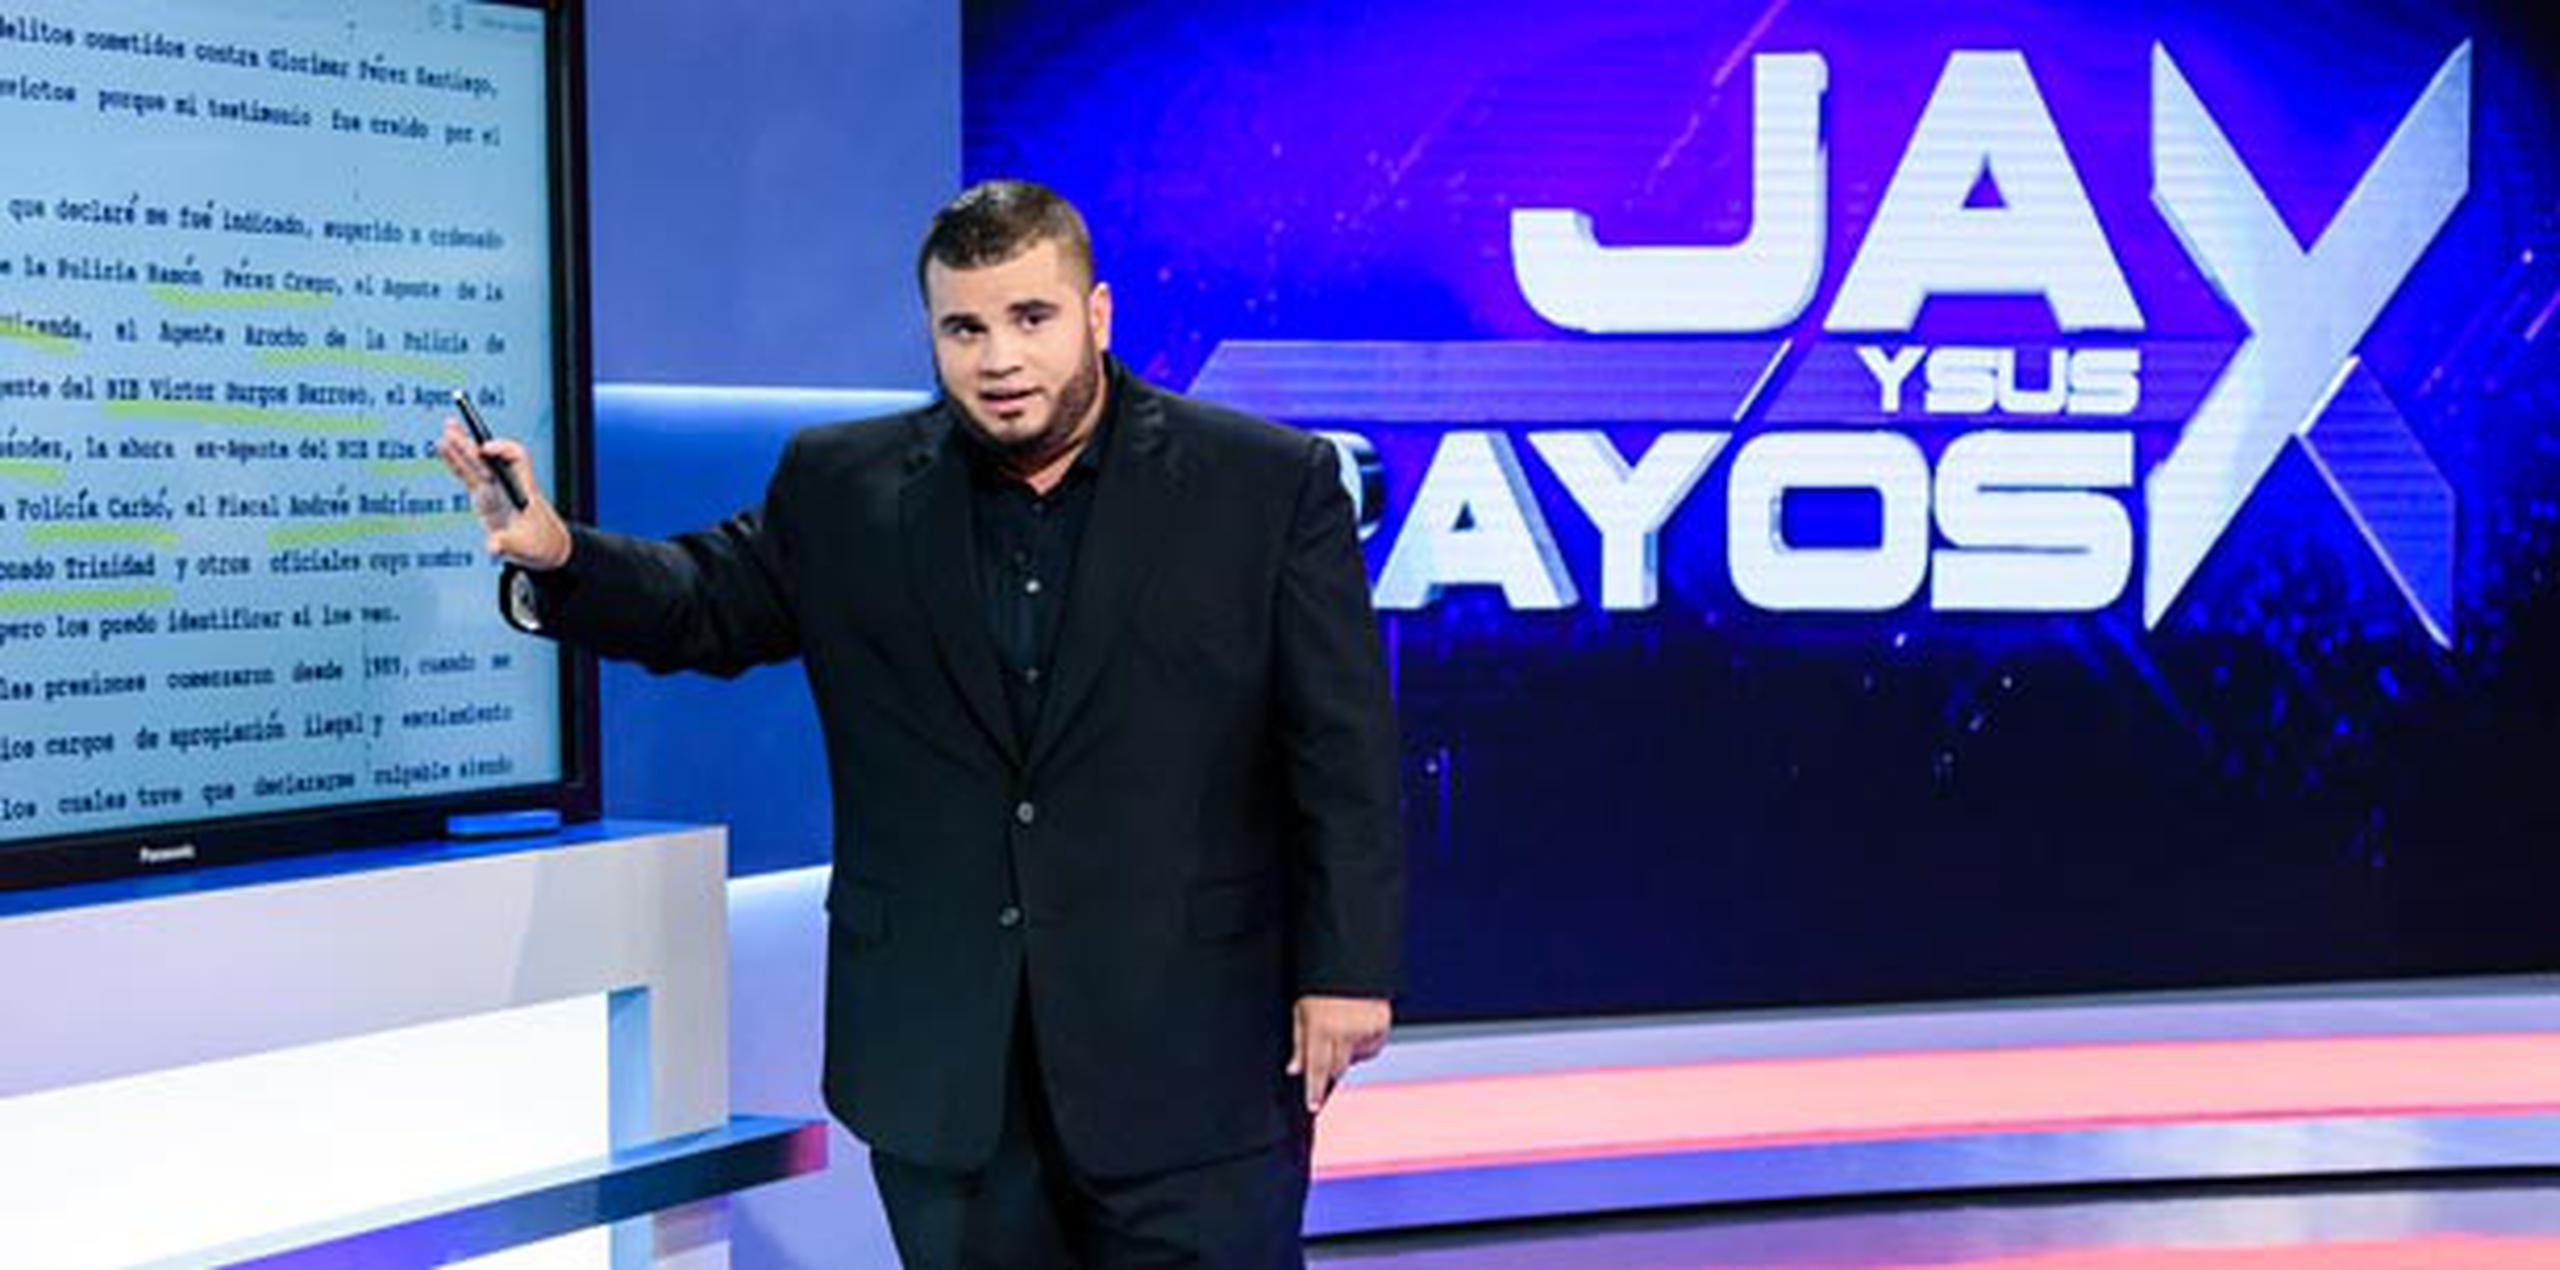 Jay y sus rayos X se transmite a las 9:00 p.m., por Telemundo. (Suministrada)